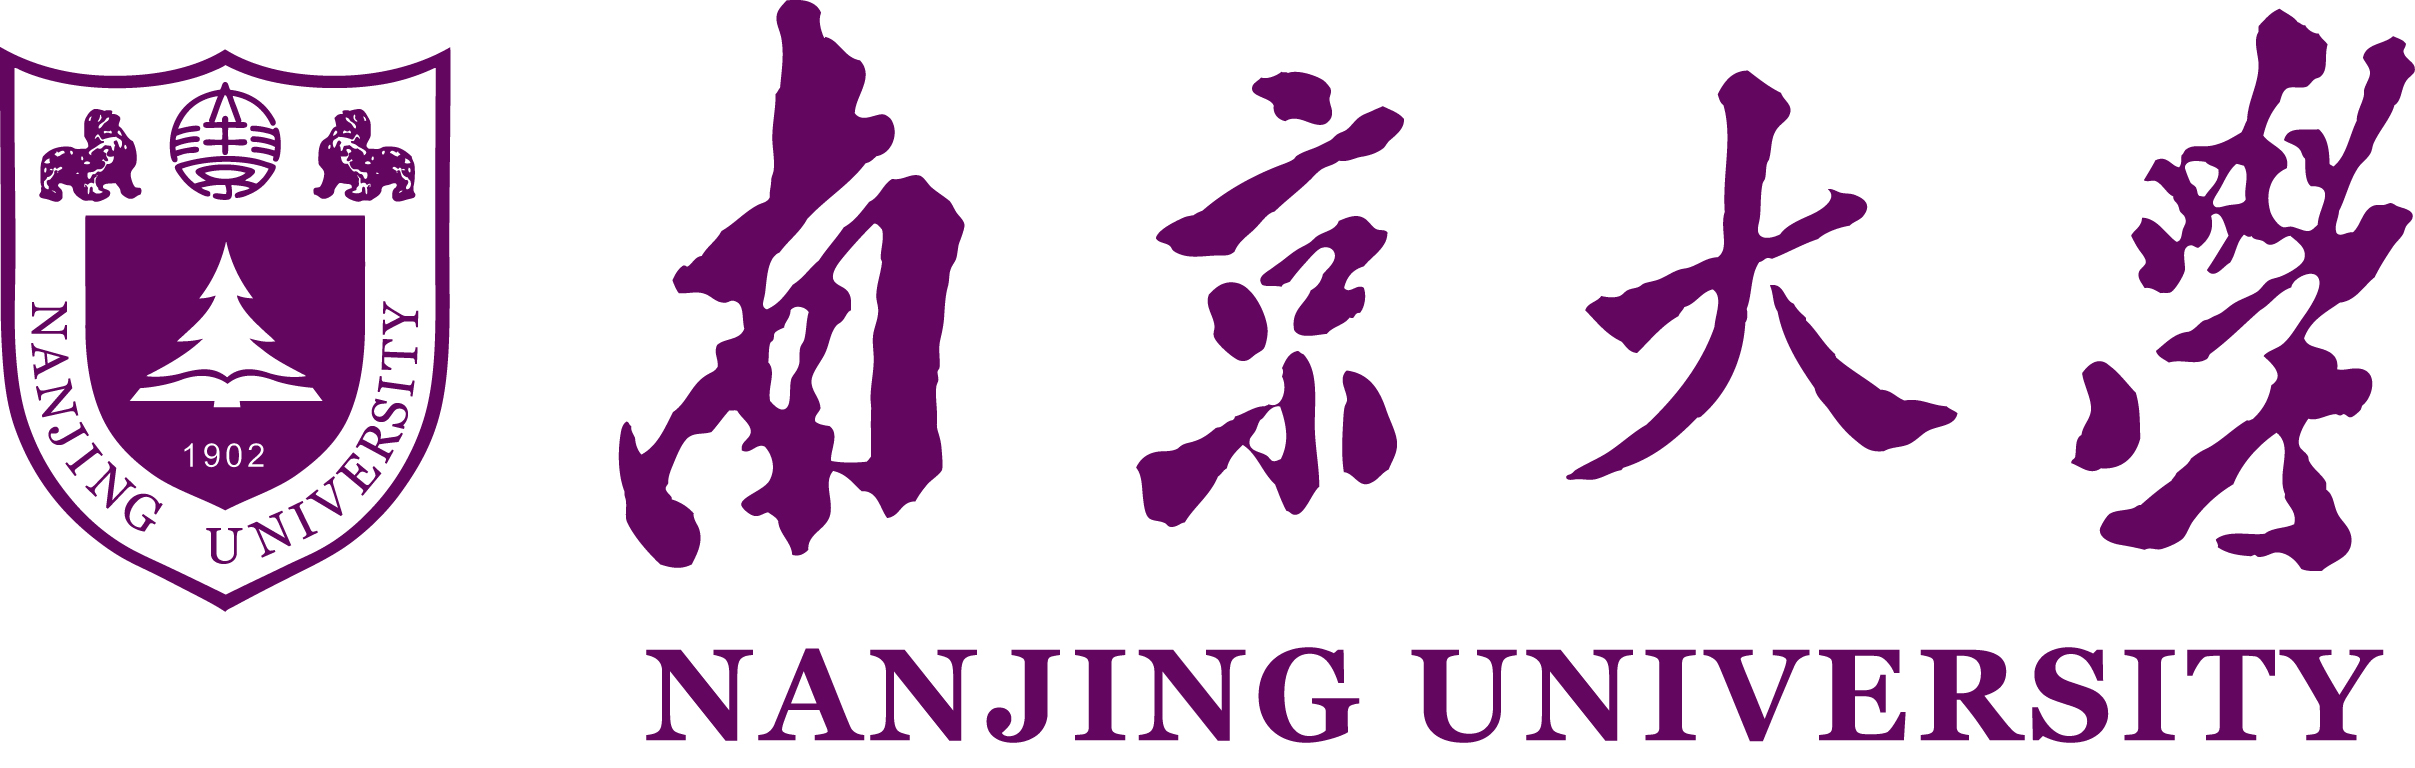 نانجنگ یونیورسٹی | بیرون ملک تعلیم حاصل کرنا